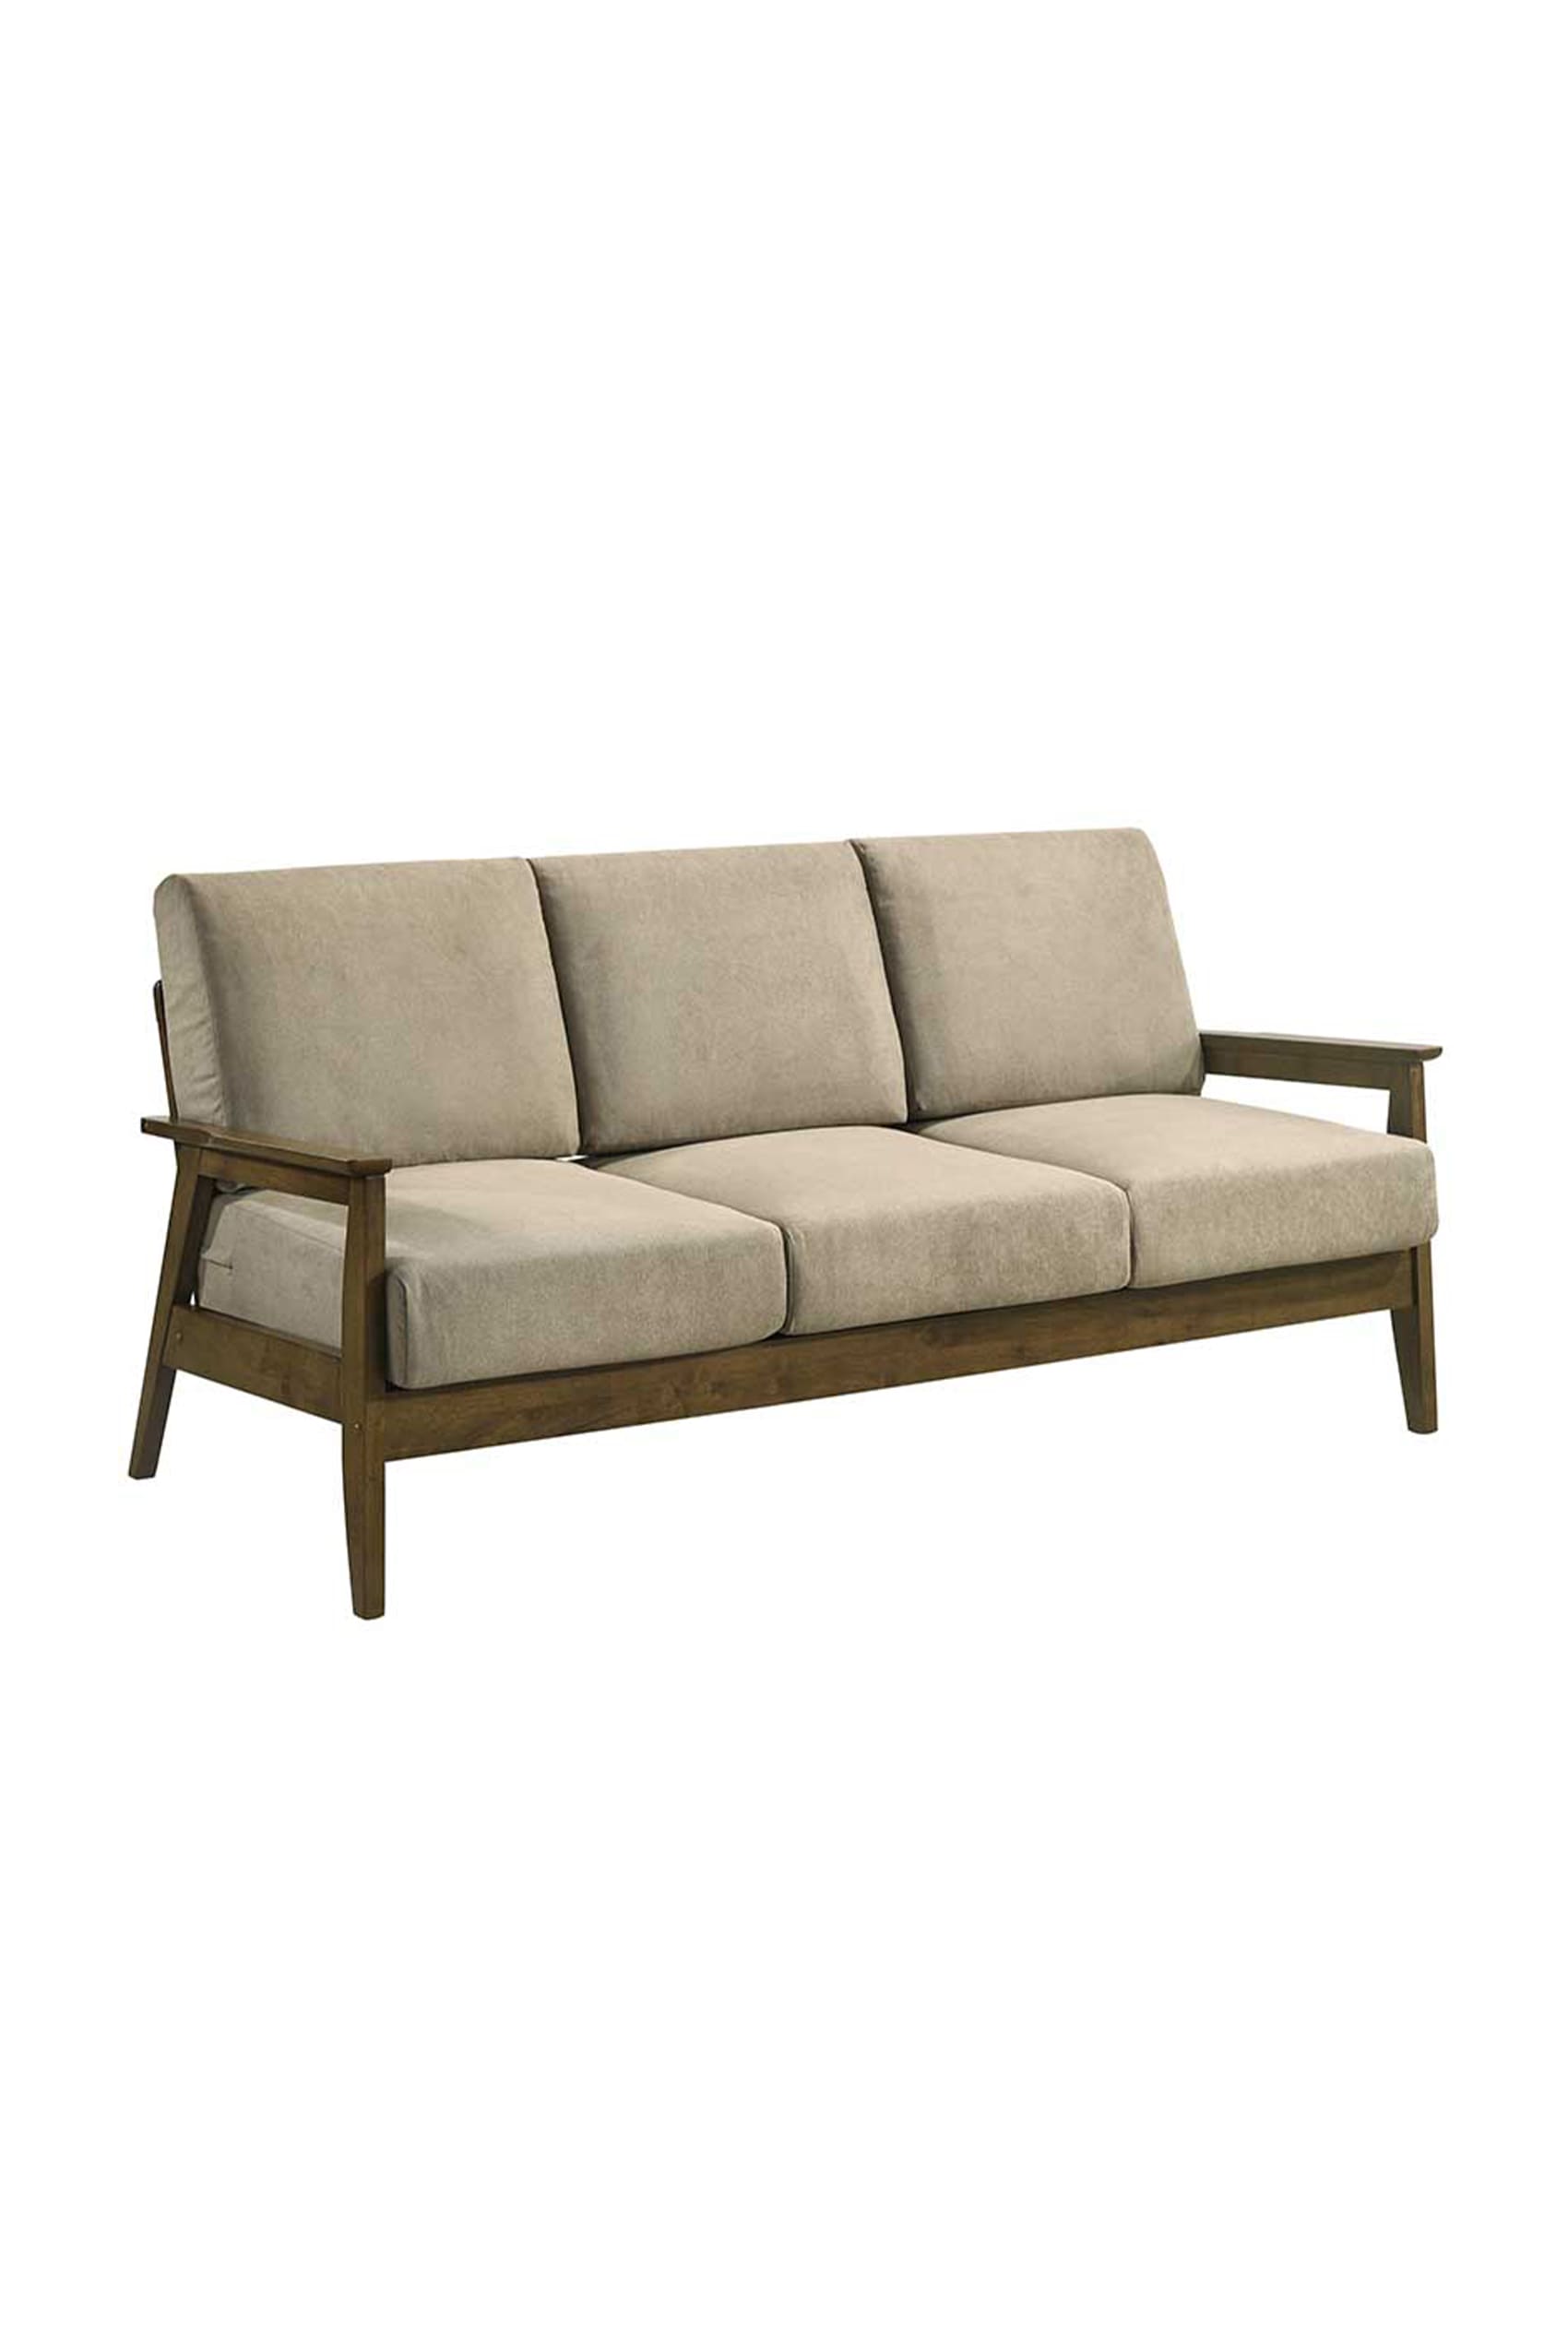 Orsaia Walnut 3 Seater Sofa